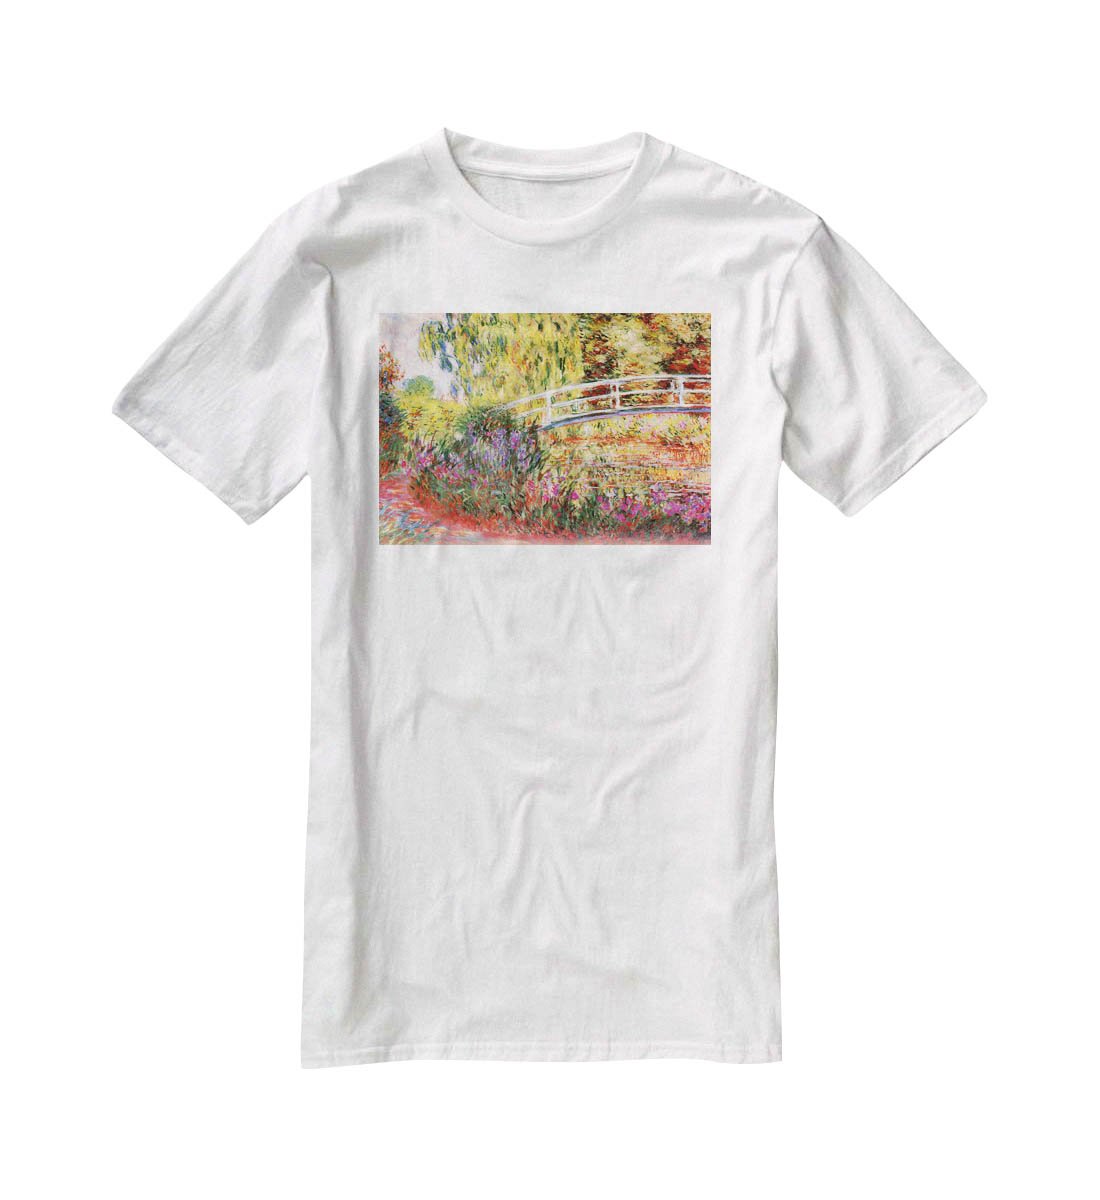 Le Bassin aux Nympheas by Monet T-Shirt - Canvas Art Rocks - 5